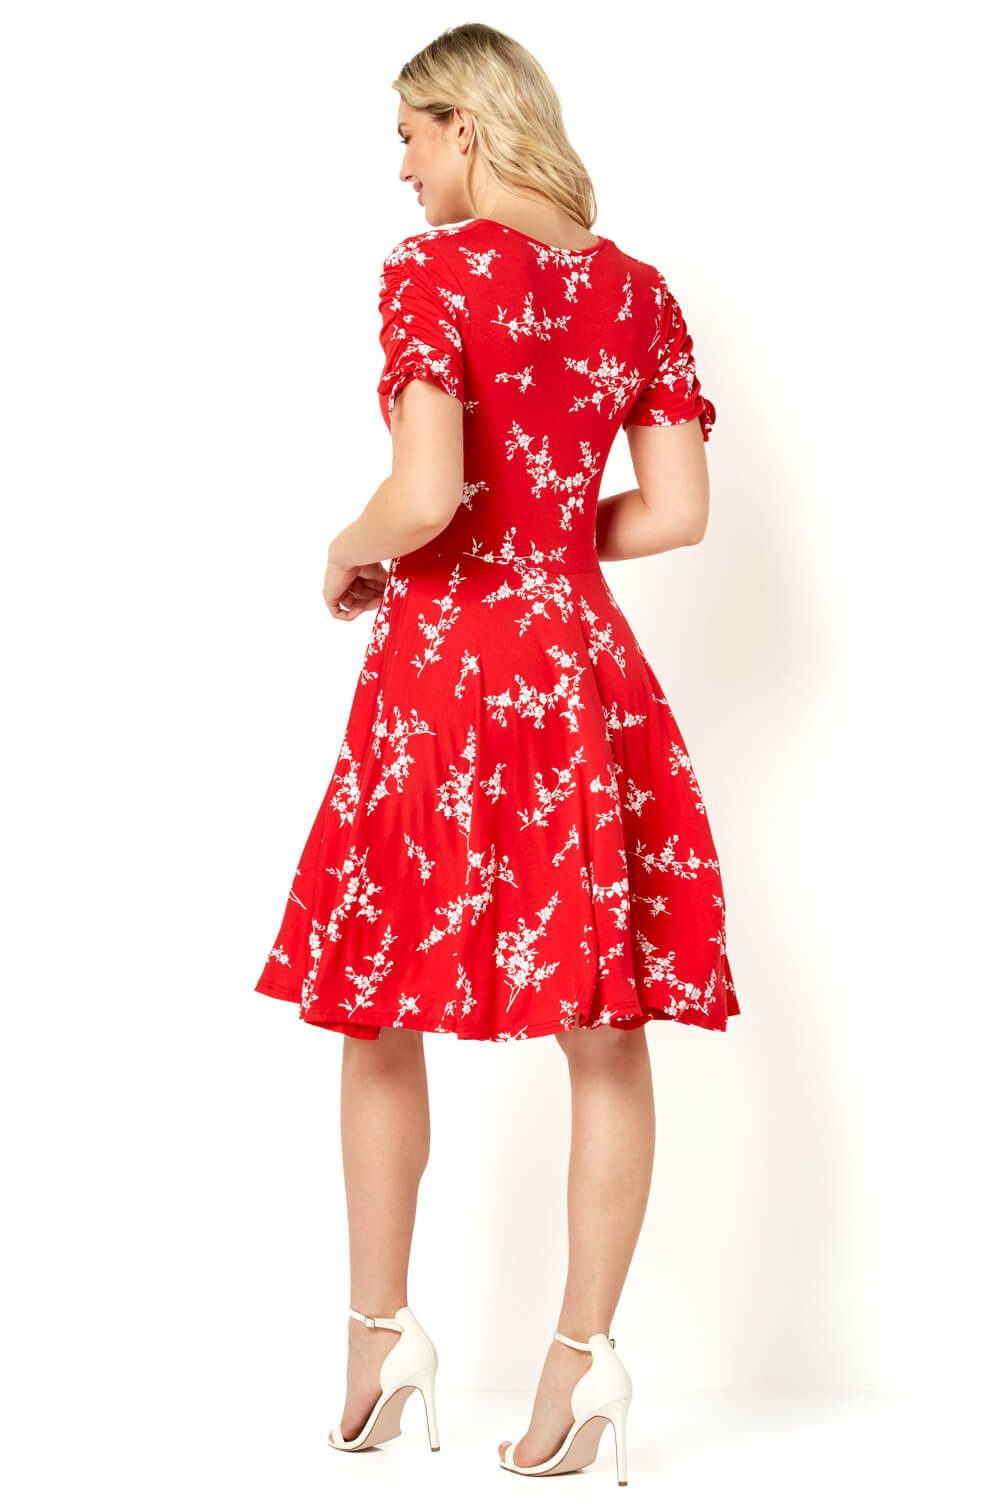 Red Floral V-Neck Short Sleeve Dress, Image 4 of 5